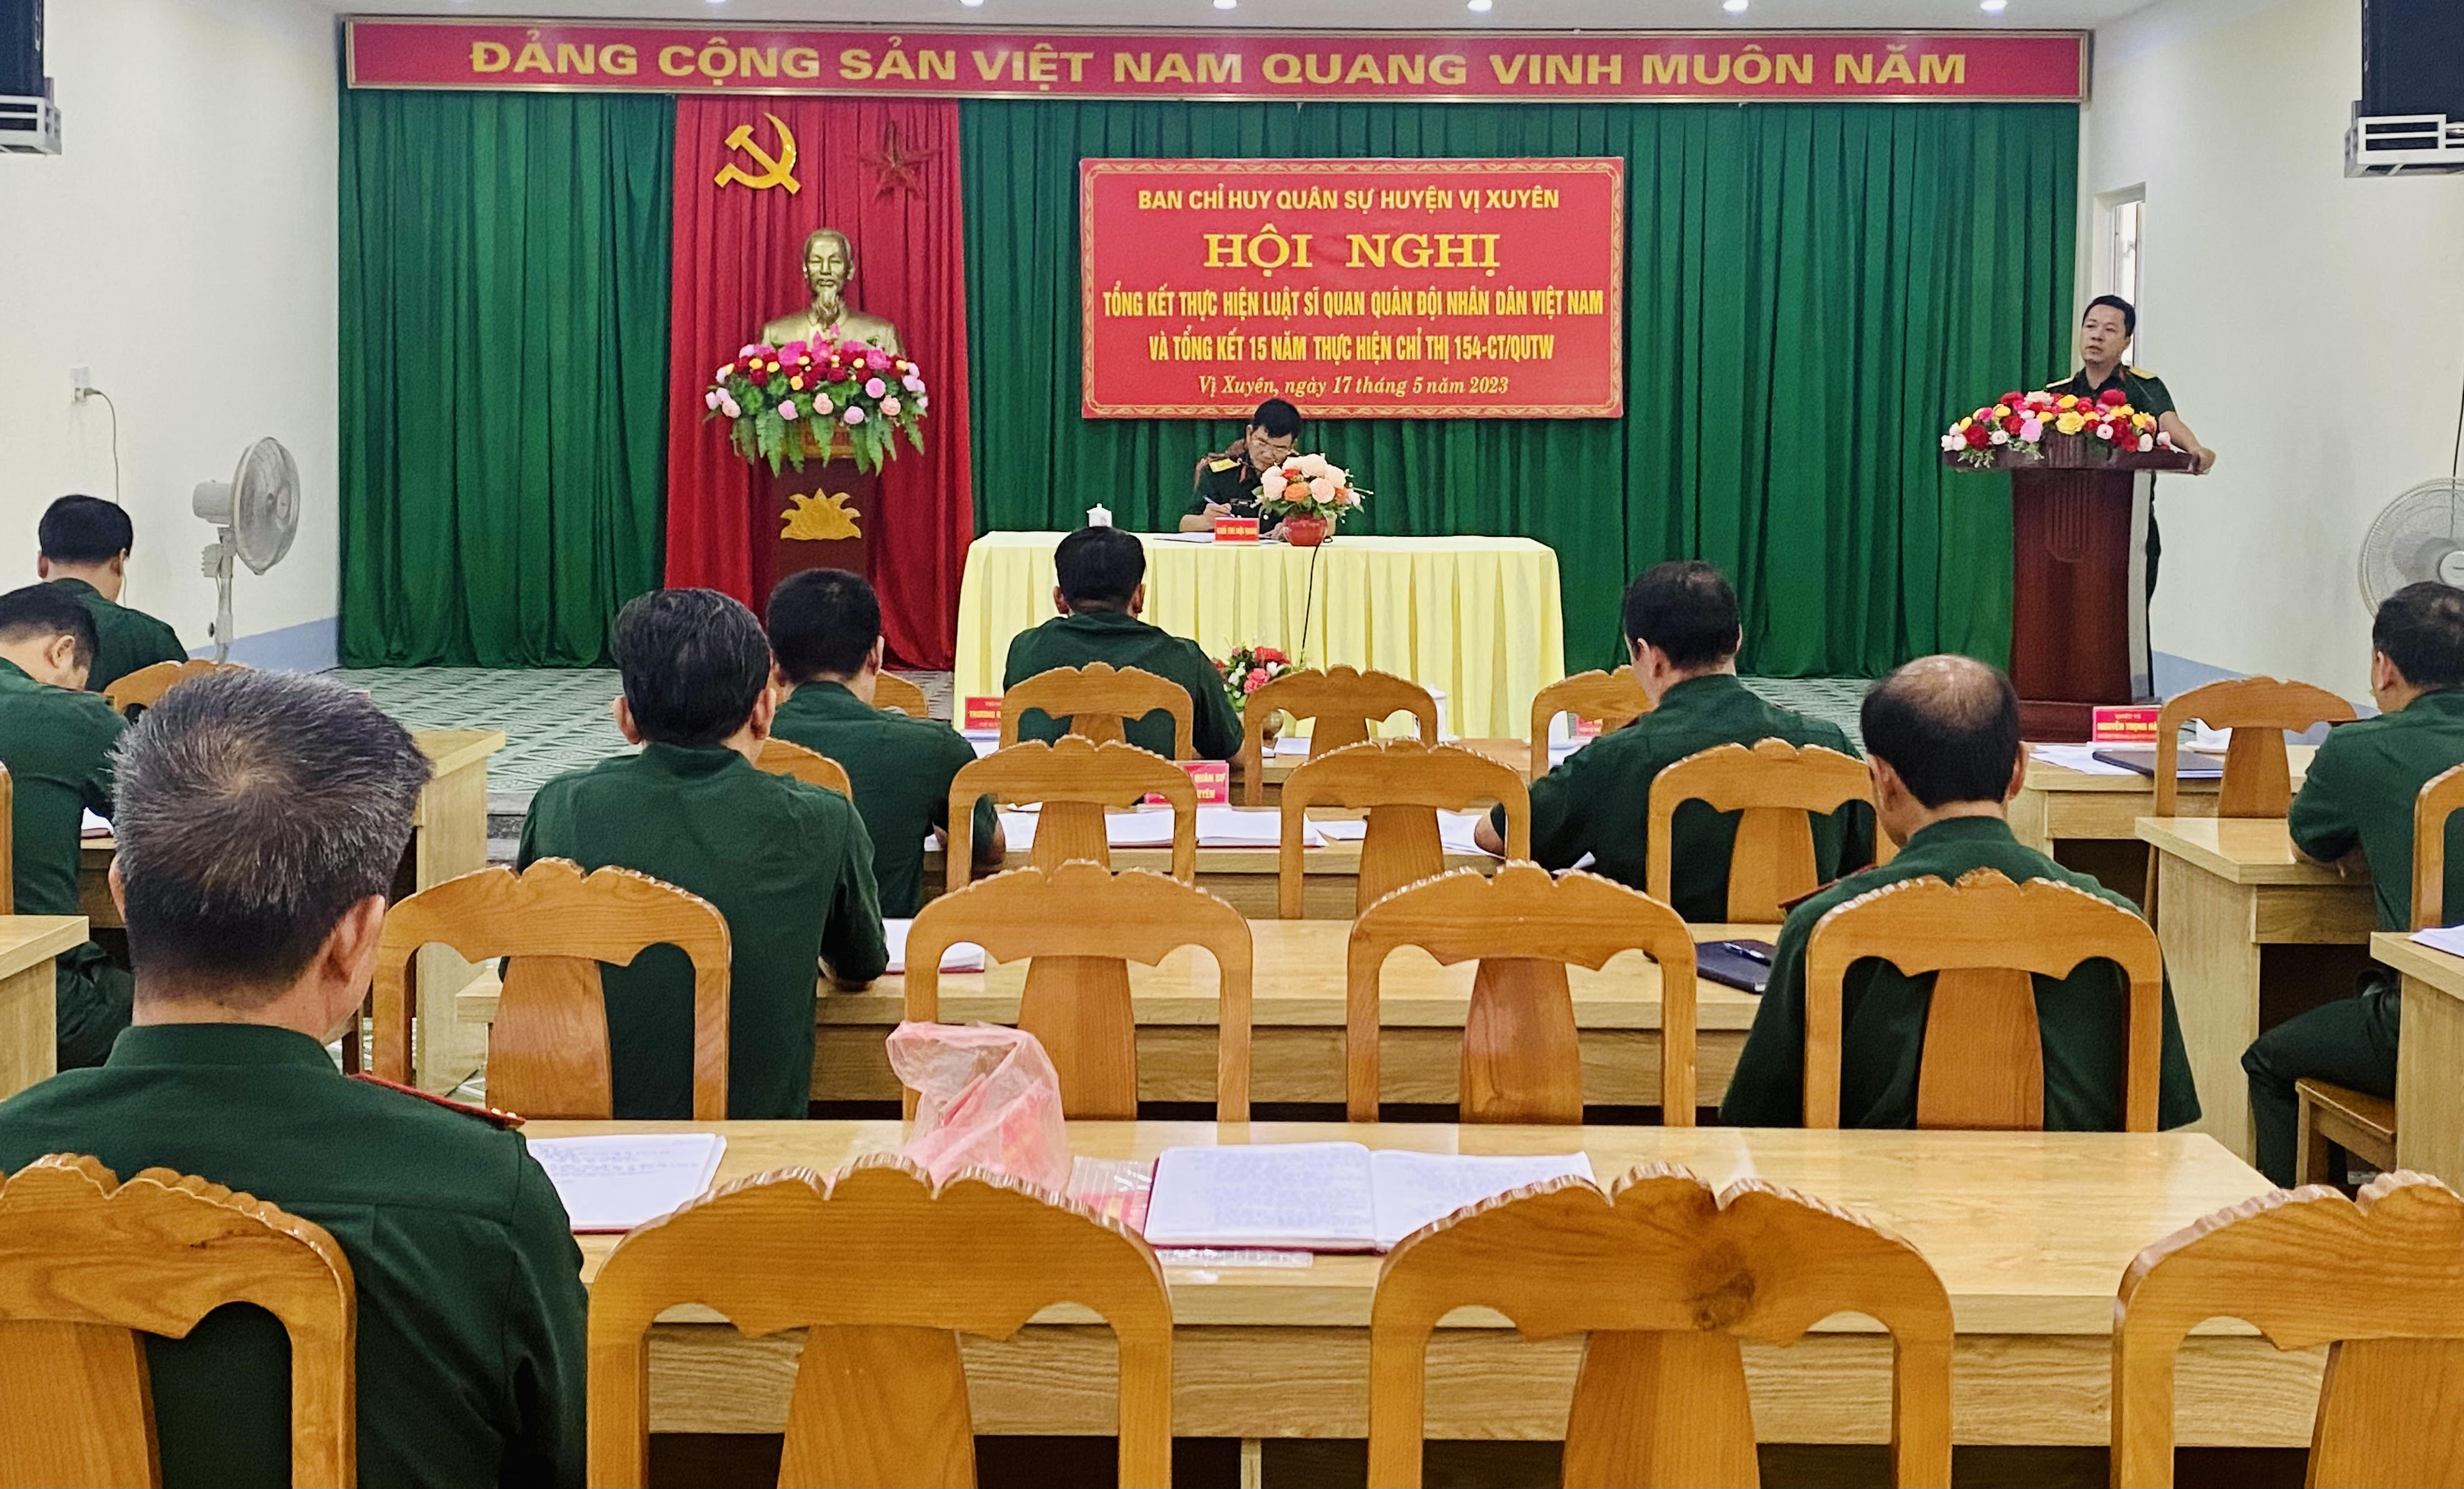 Hội nghị Tổng kết Luật sĩ quan Quân đội nhân dân Việt Nam và 15 năm thực hiện Chỉ thị 154- CT, ngày 09/4/2008 Đảng uỷ Quân sự Trung ương